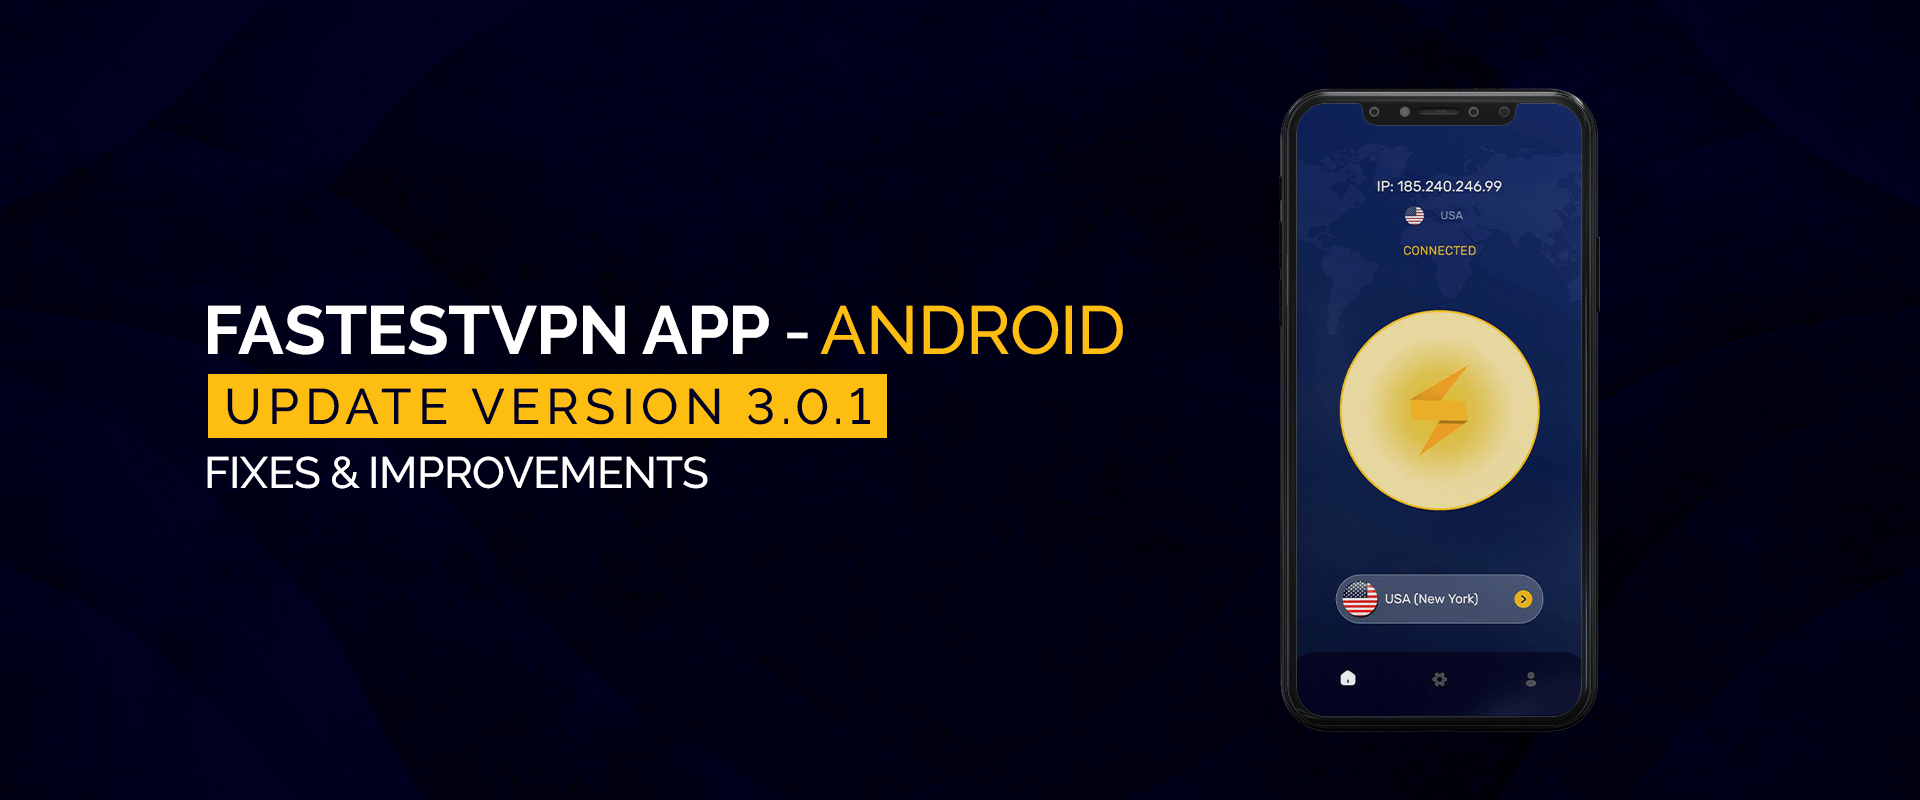 FastestVPN Android アプリ バージョン 3.0.1 を更新しました